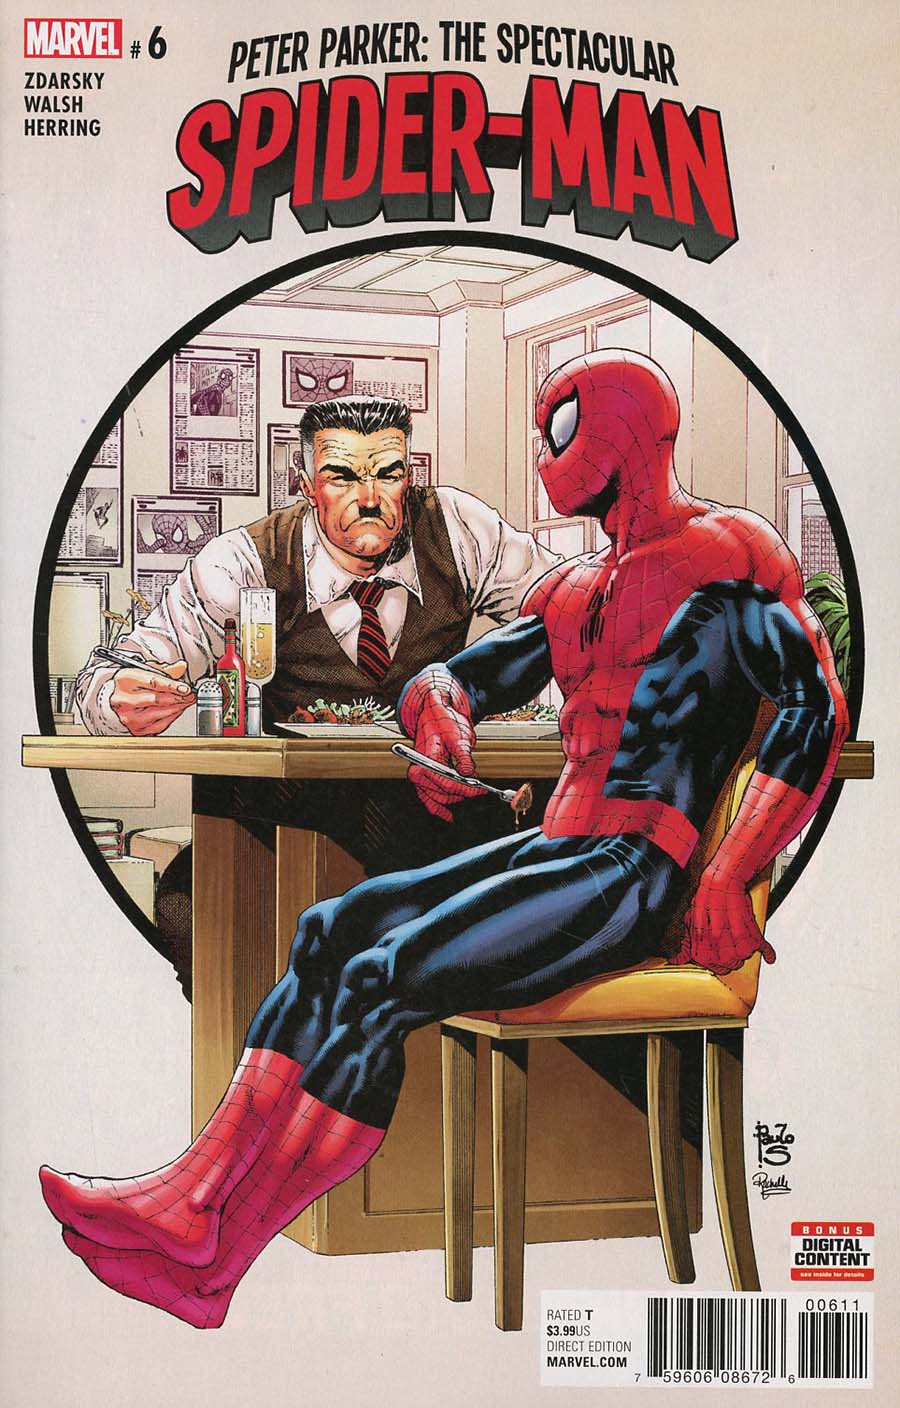 Peter Parker Spectacular Spider-Man #6